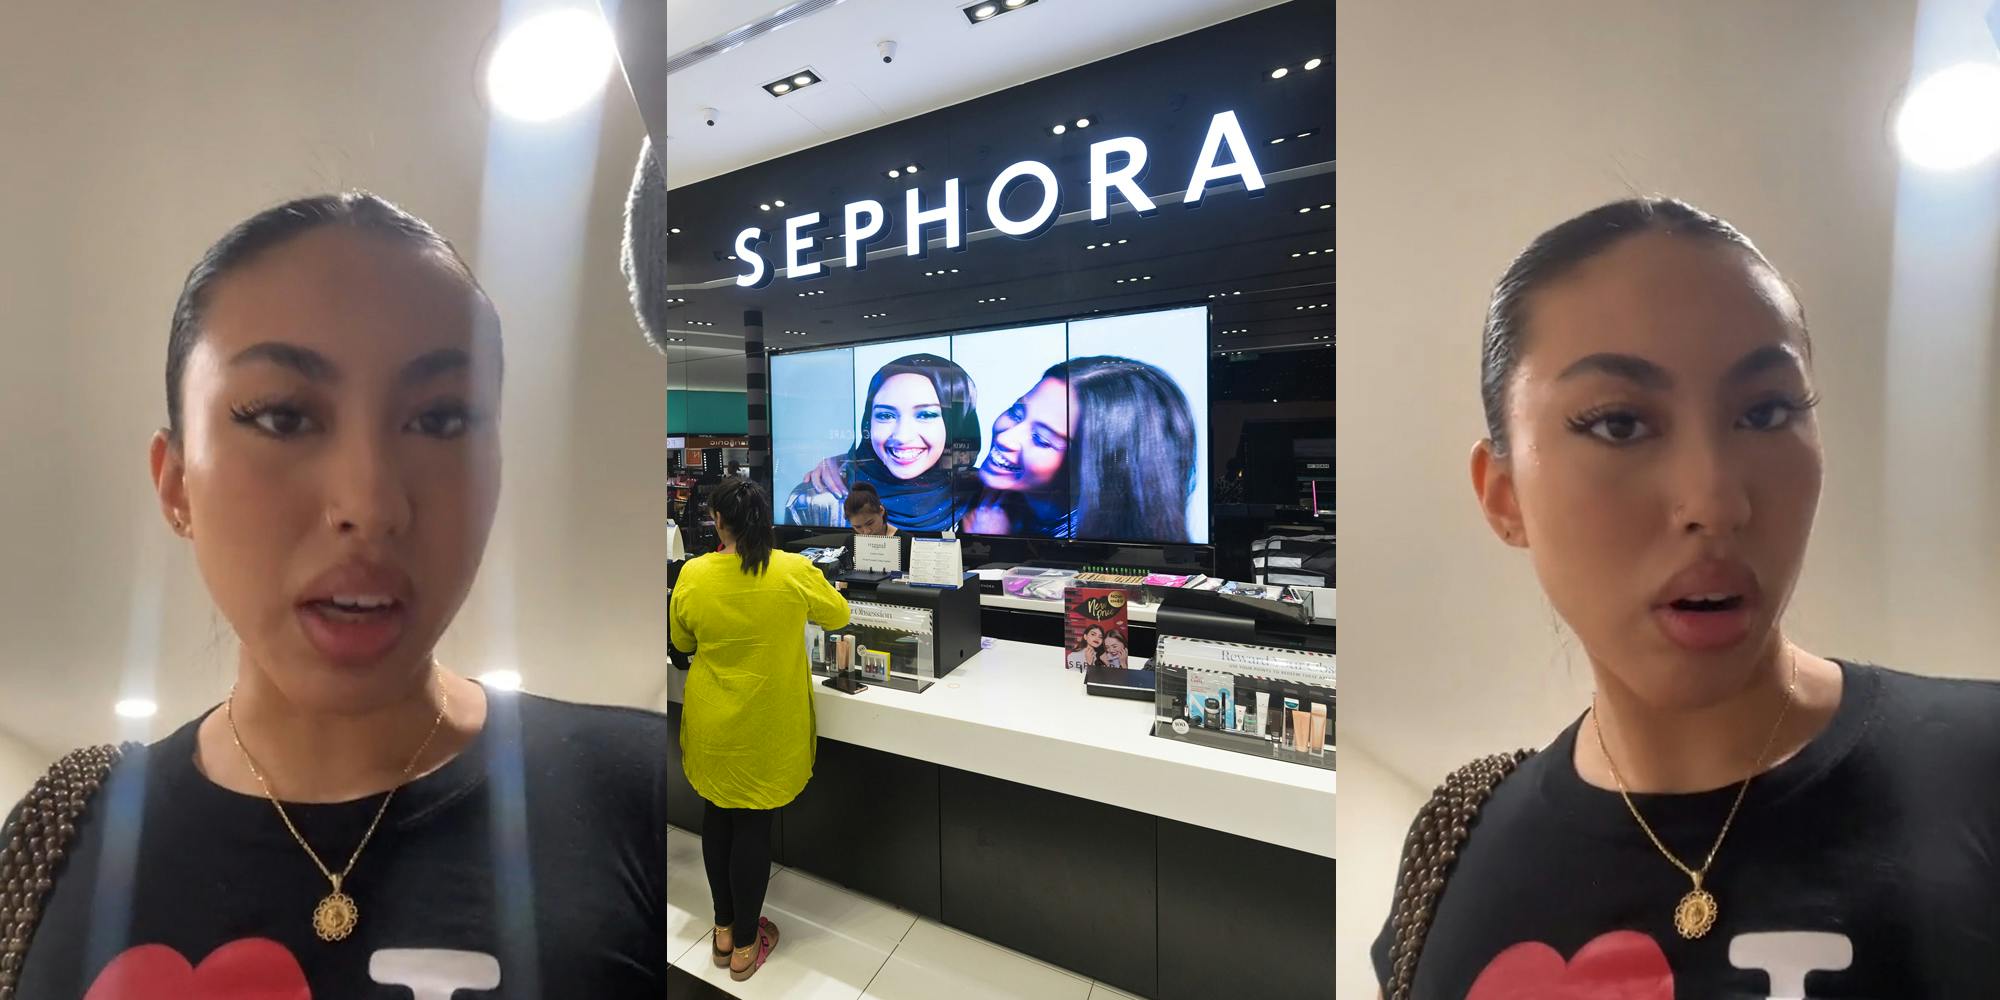 Sephora customer speaking (l) Sephora interior with sign (c) Sephora customer speaking (r)